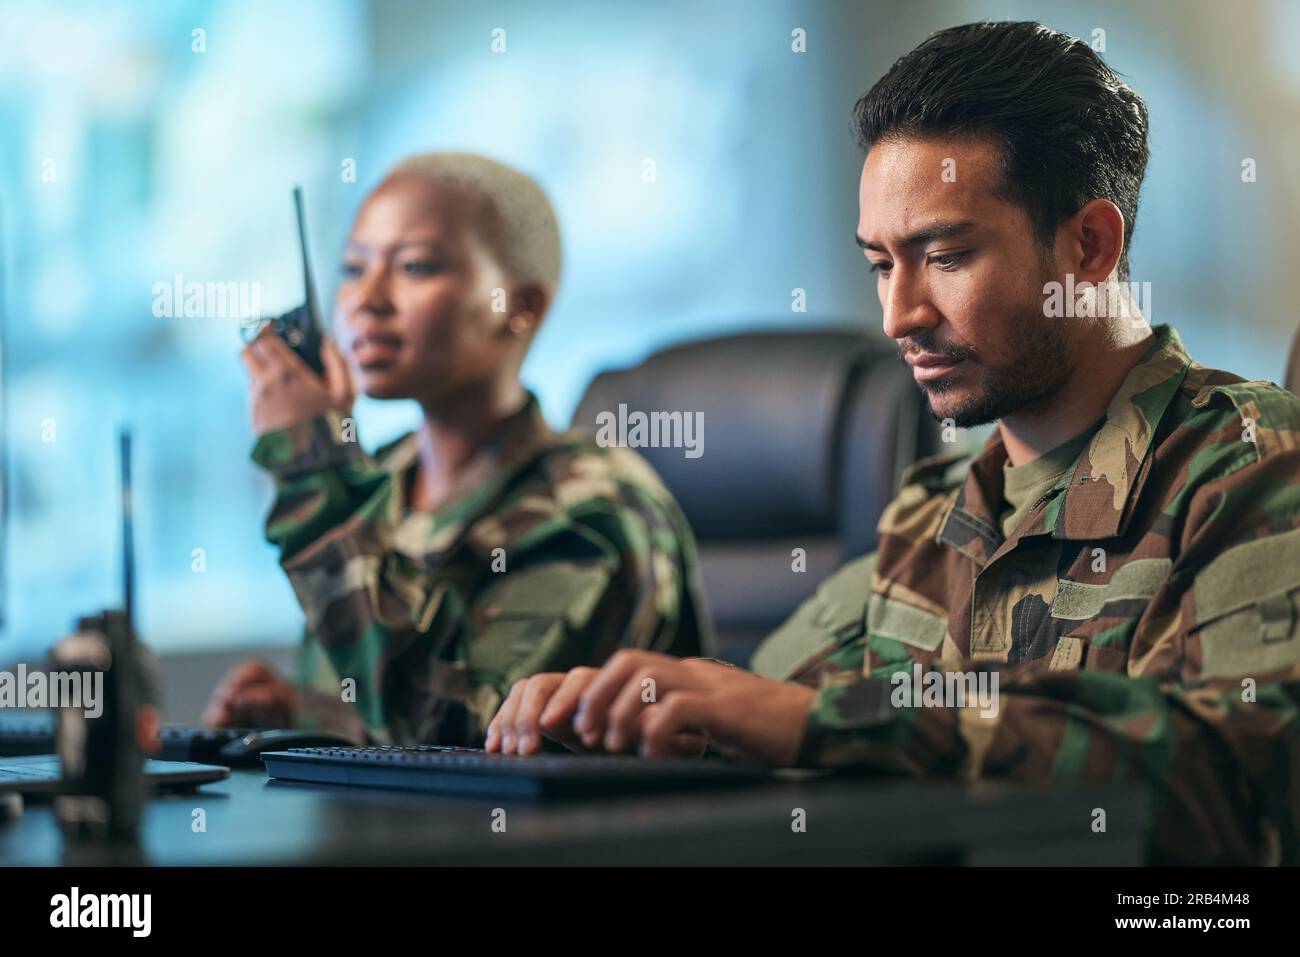 Walkie-Talkie, Arbeits- und Armeeteam auf der Station mit Computer, der Wegbeschreibungen gibt. Technologie, Zusammenarbeit und Soldaten im Militärraum oder Stockfoto